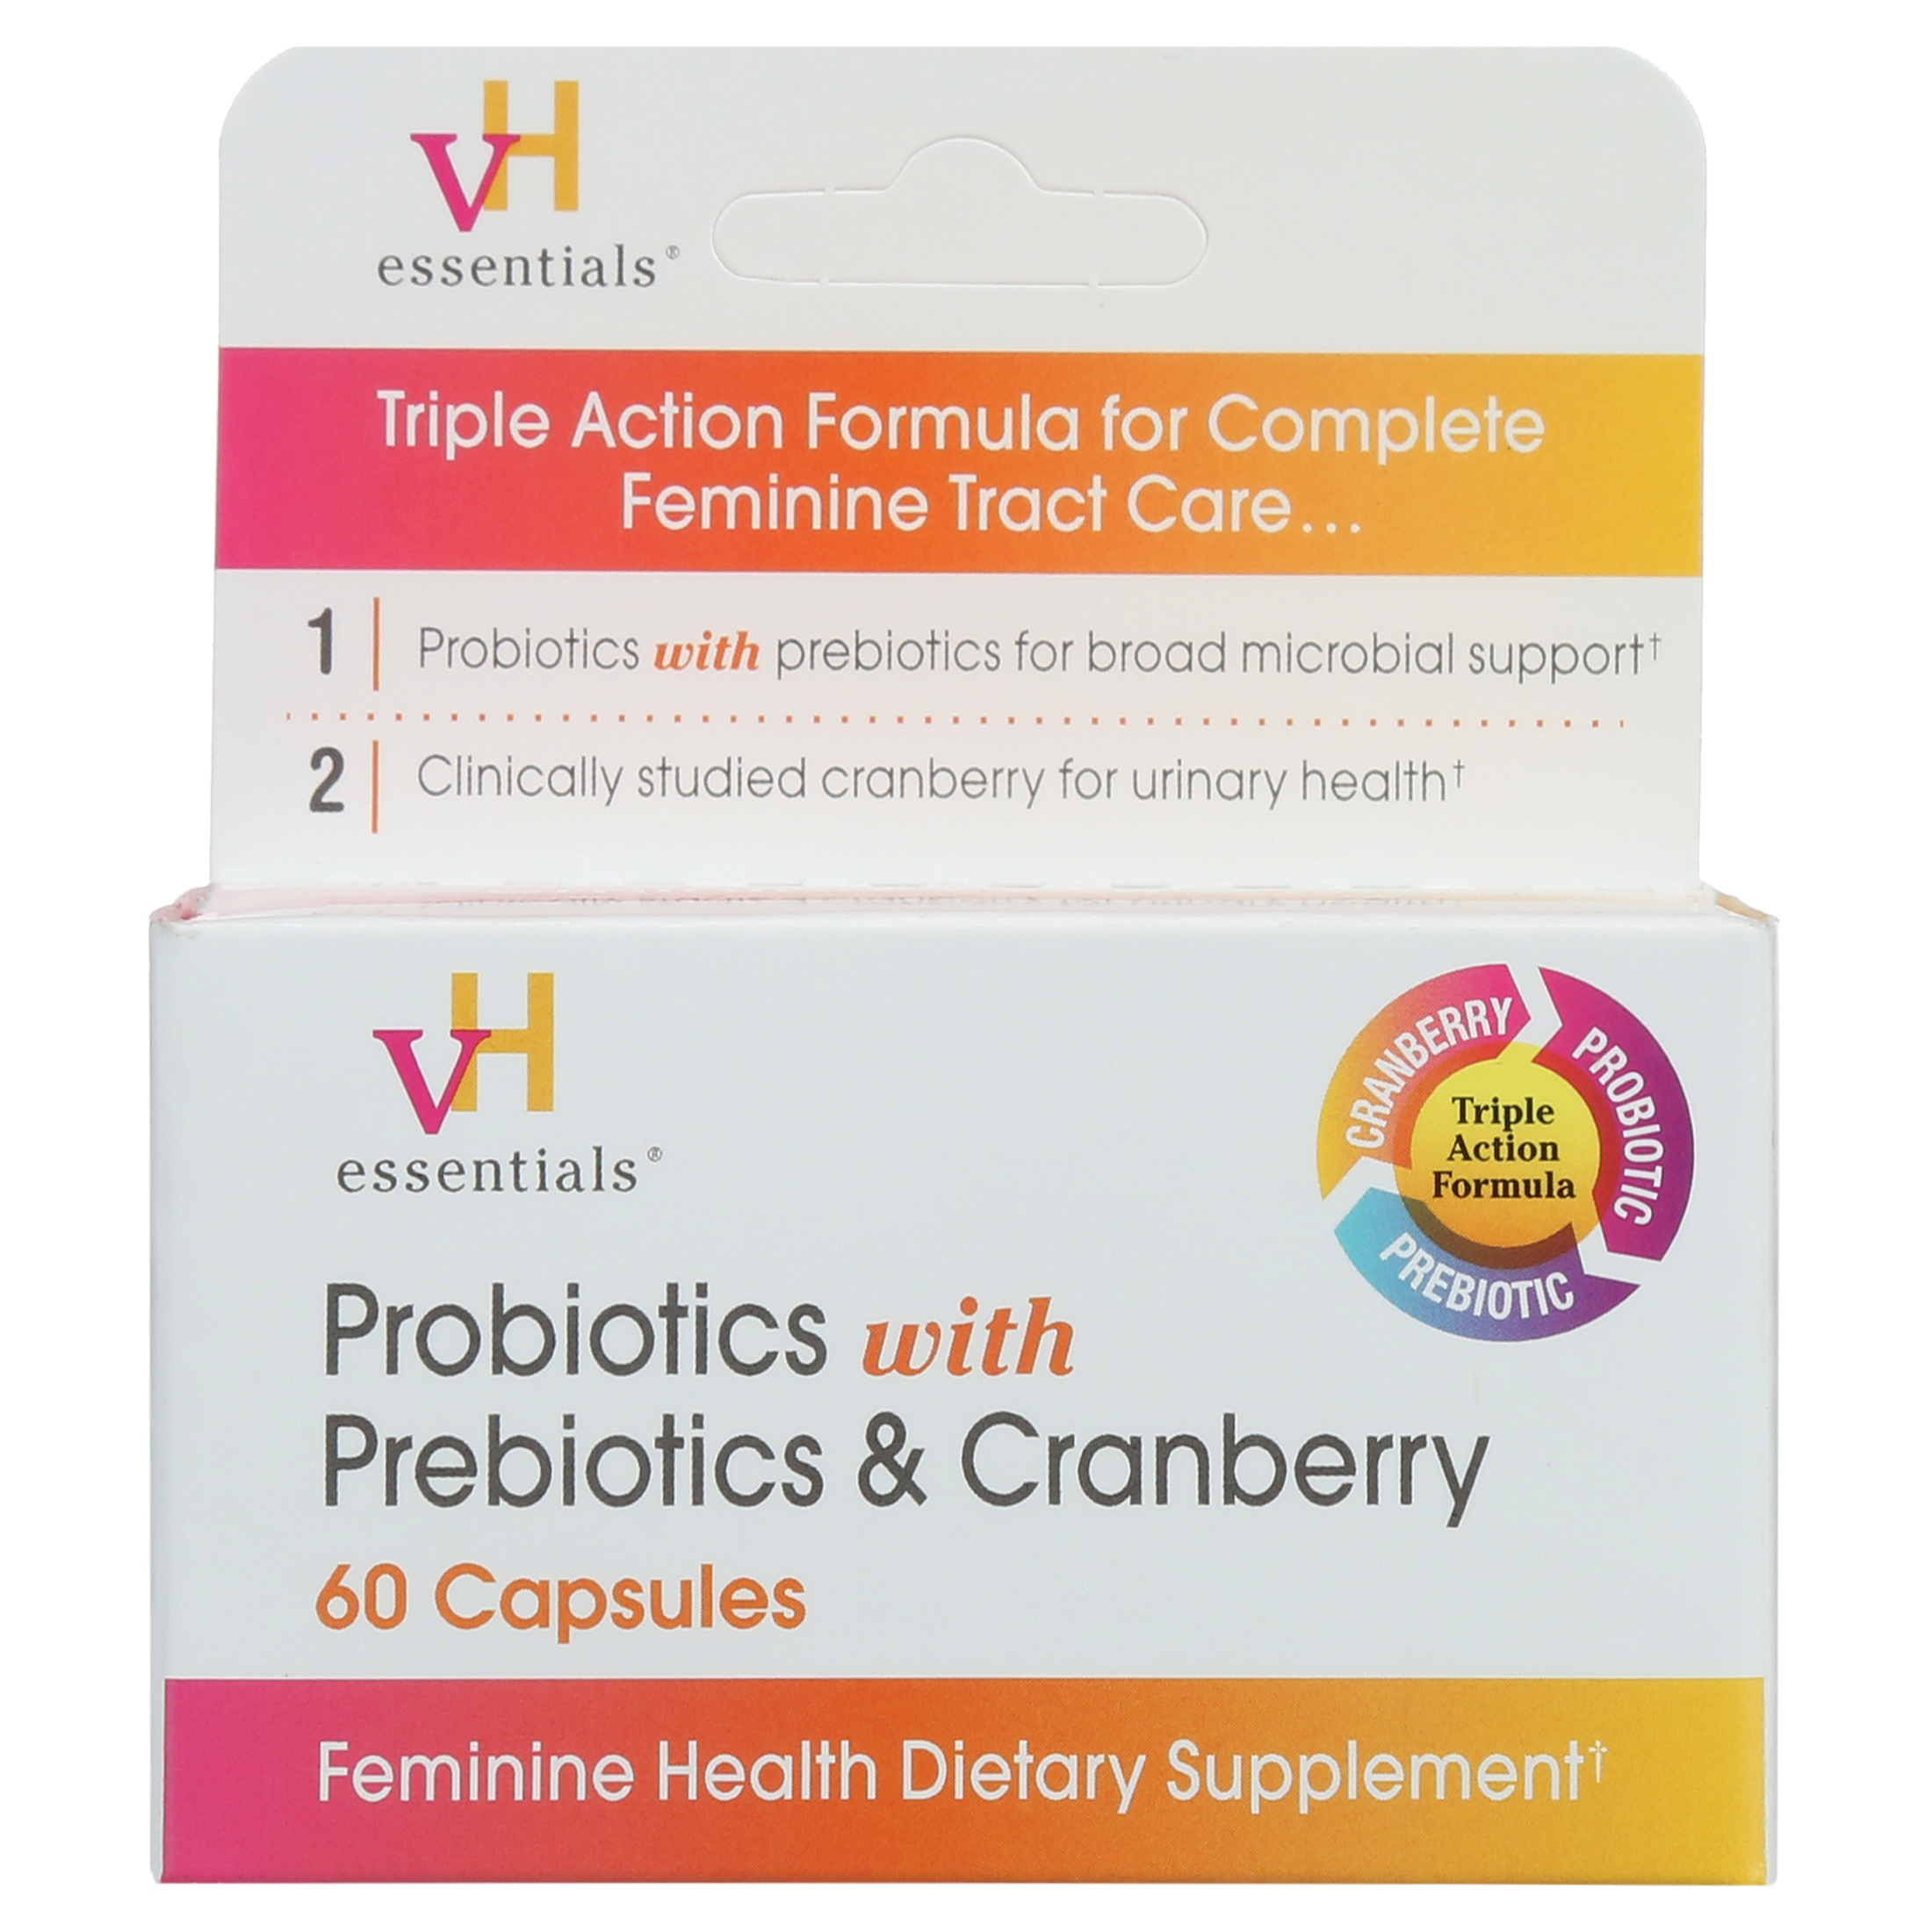 vH essentials Probiotics with Prebiotics and Cranberry Feminine Health Supplement - 60 Capsules - image 5 of 9